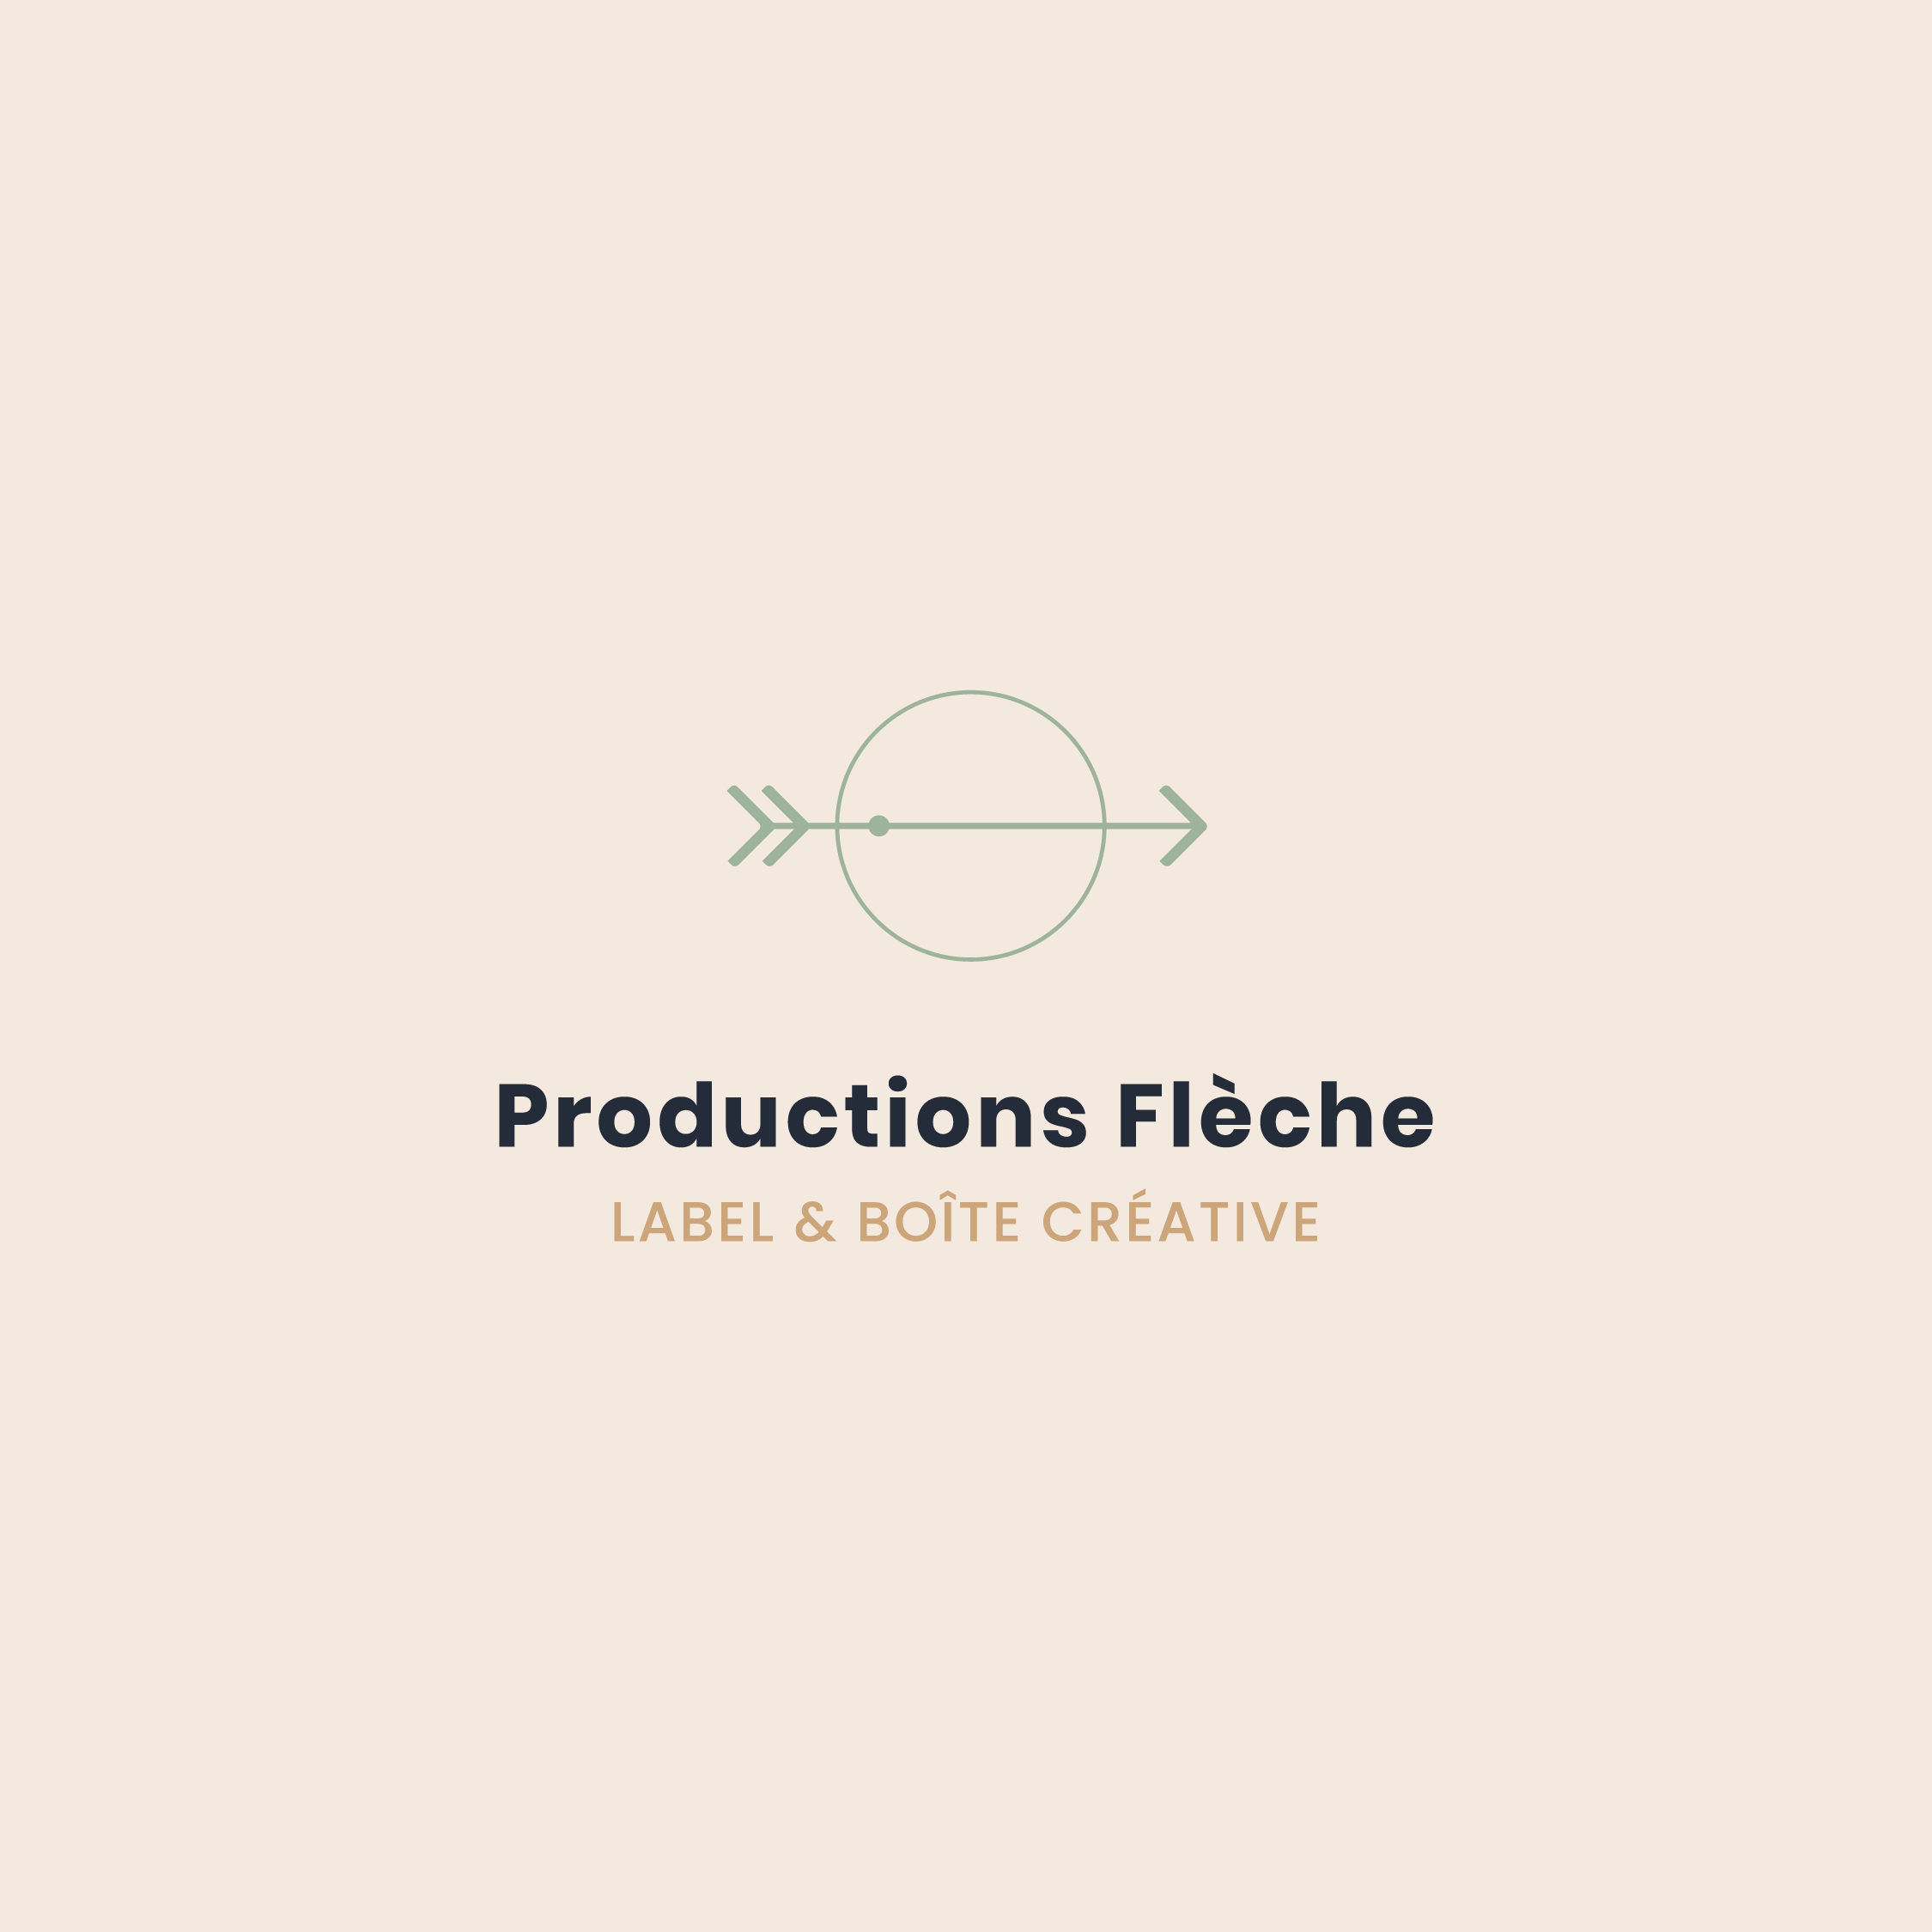 Productions Flèche par Valfeltõ